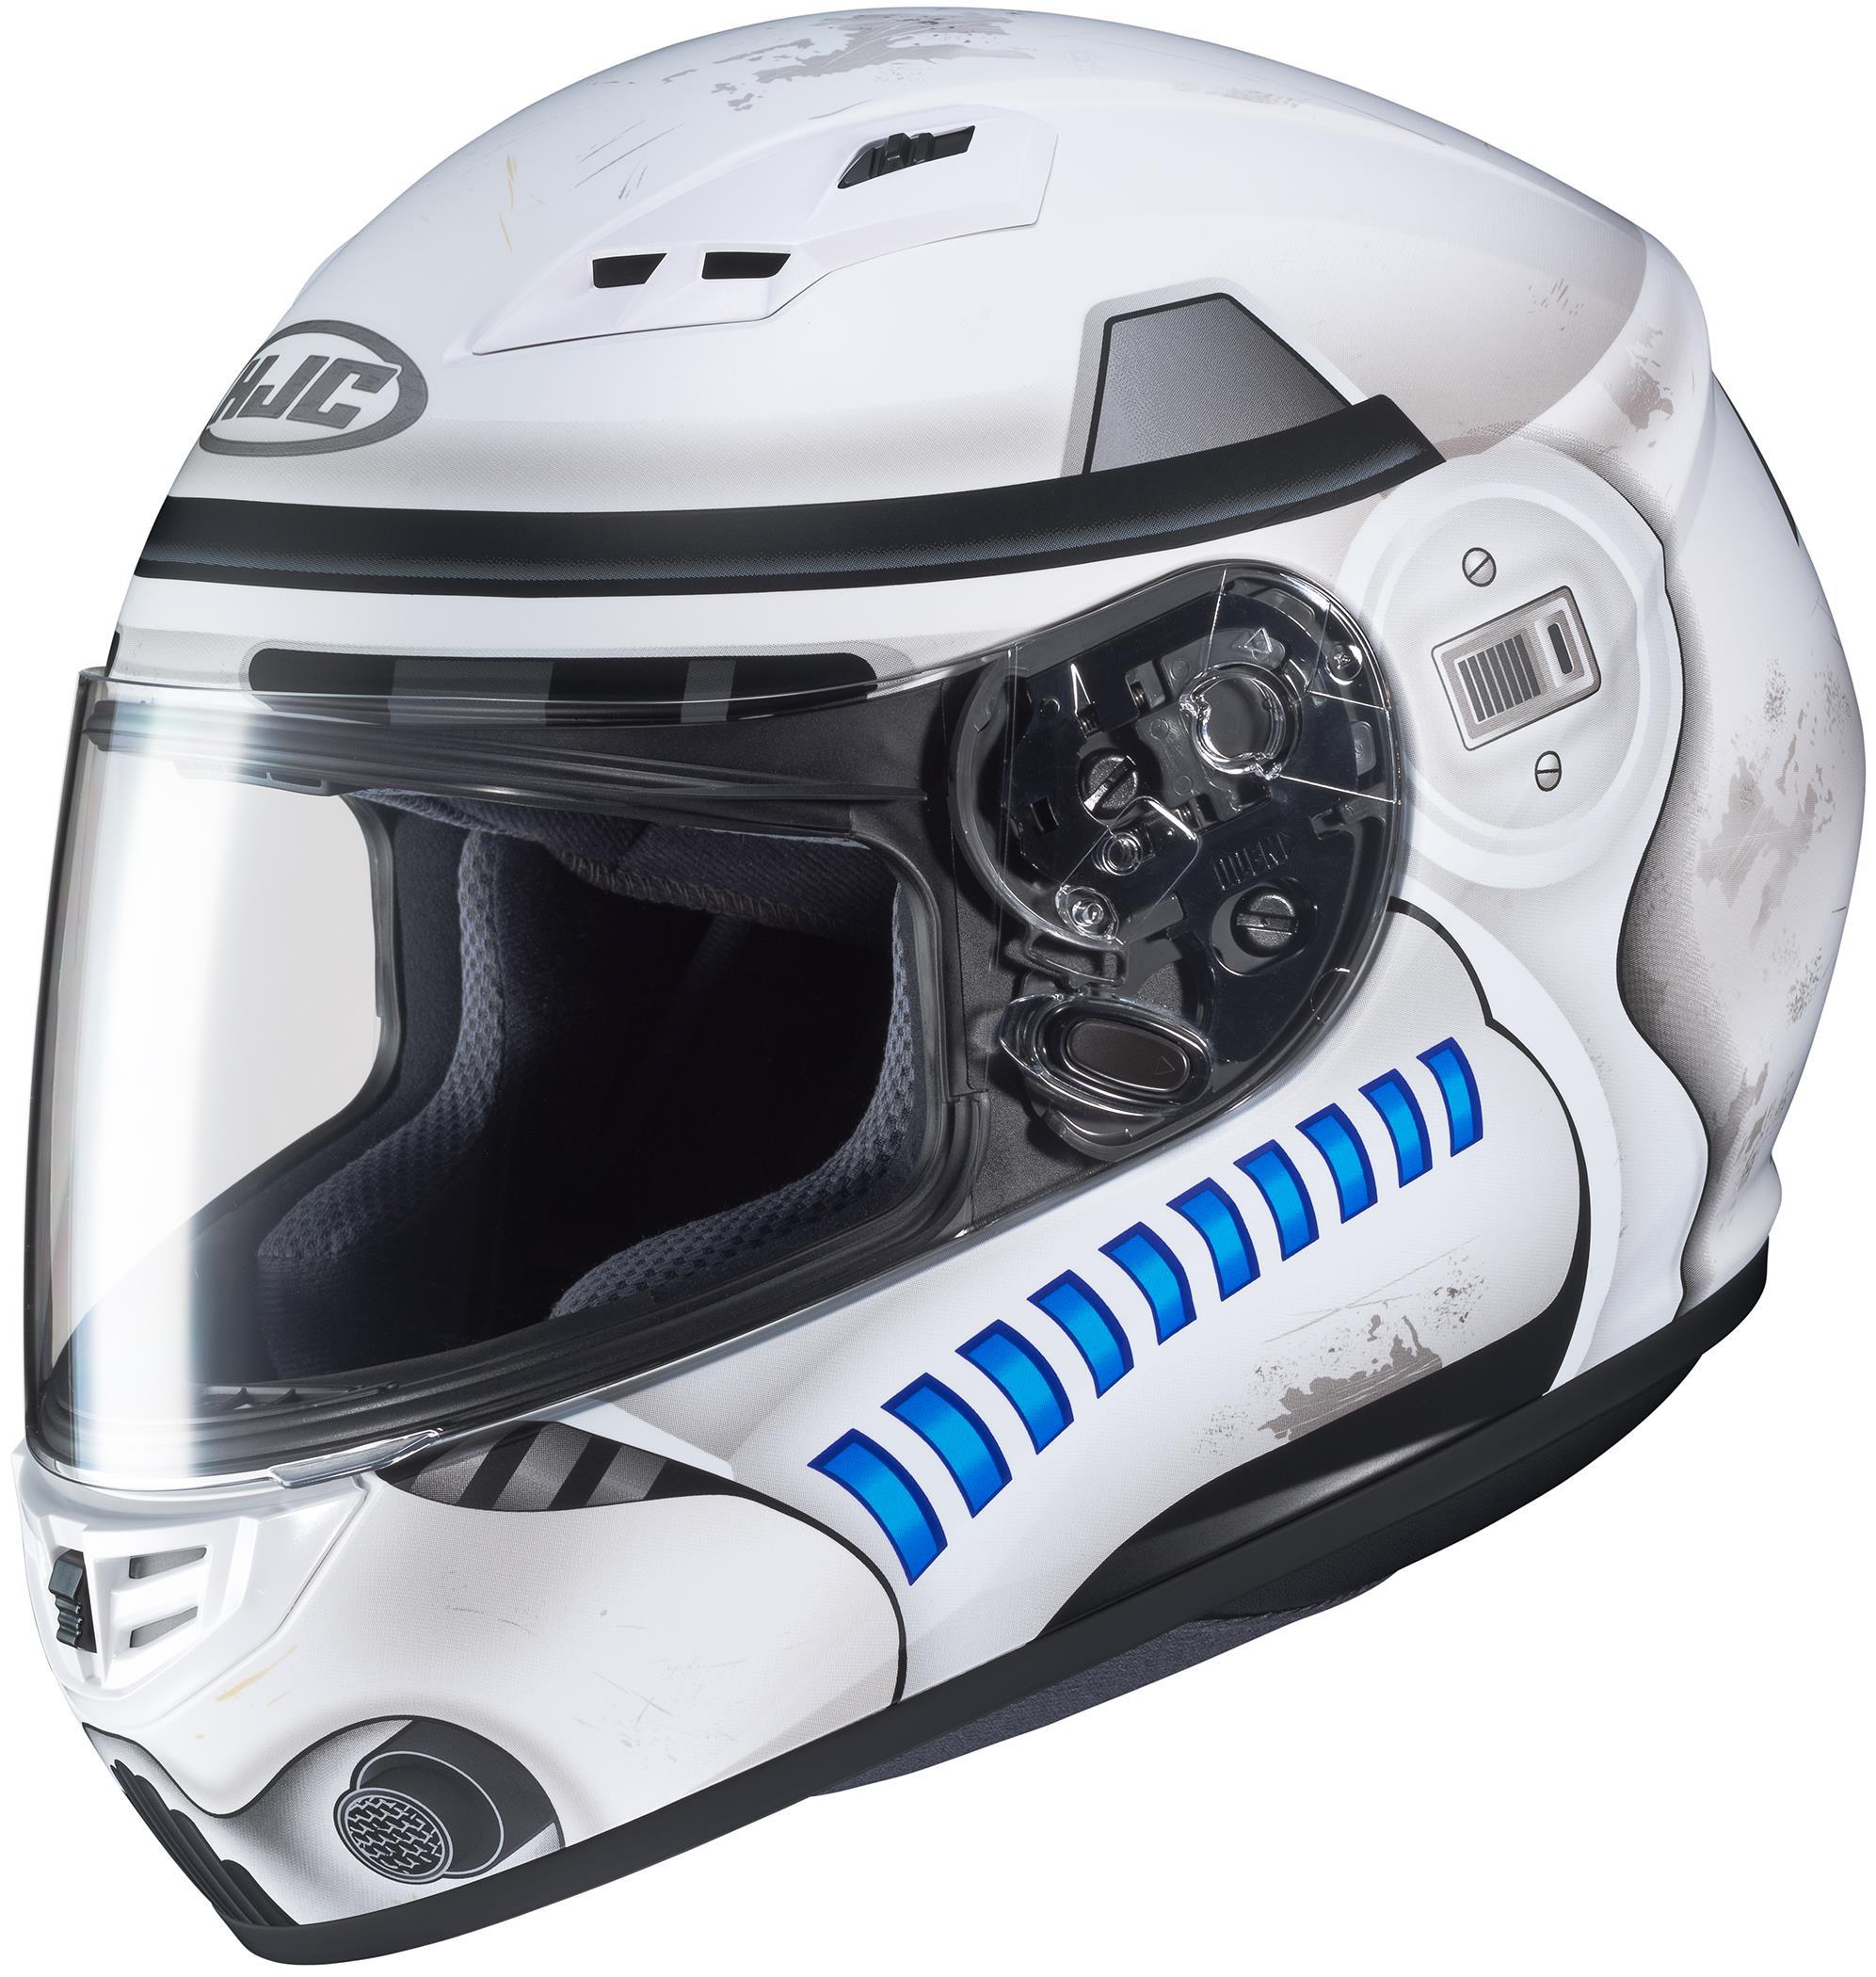 CS R3 Storm Trooper